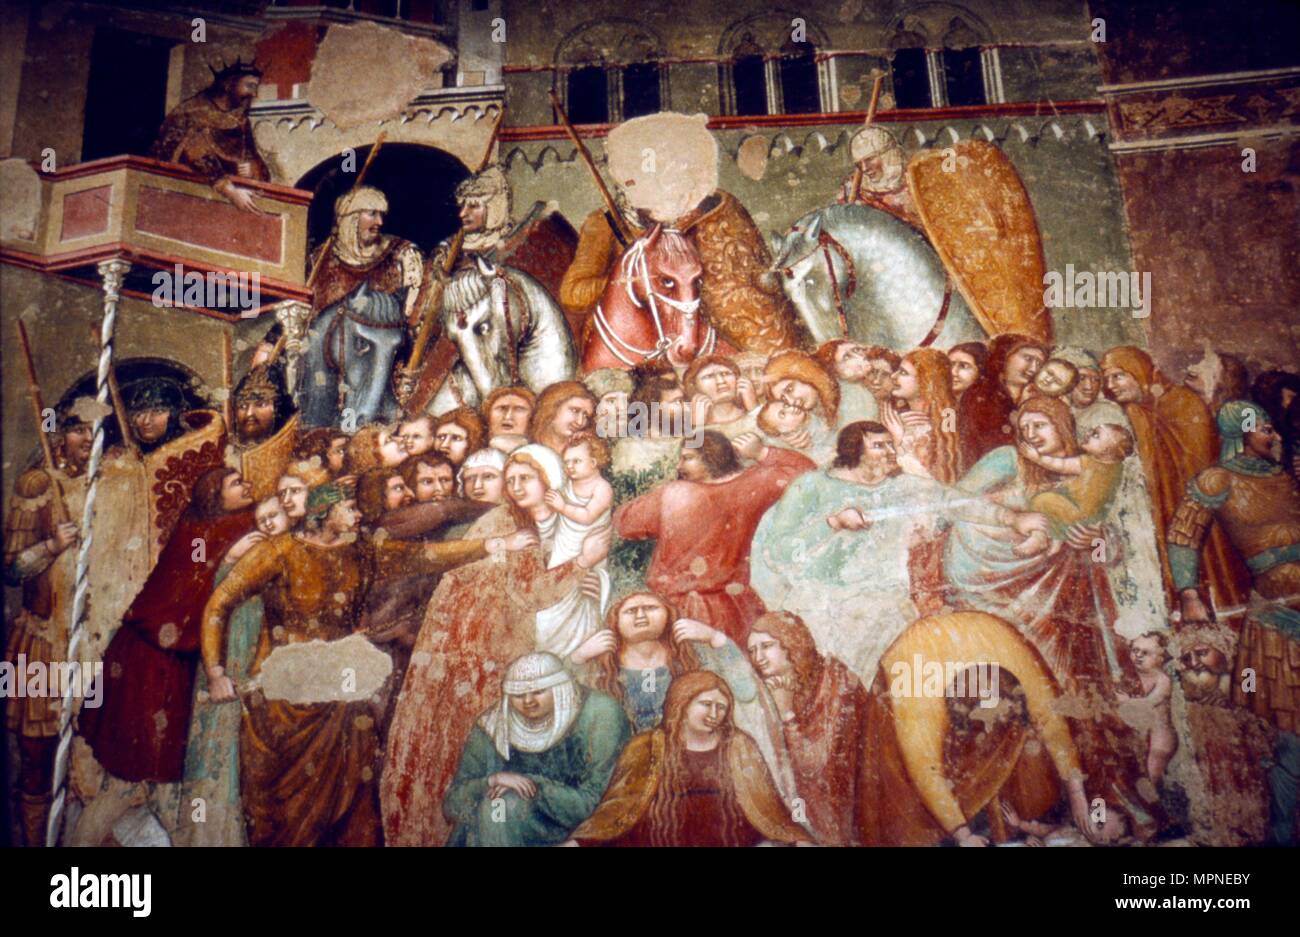 Massacre of the Innocents, Fresco in church of Santi Agostino, Siena, 1482. Artist: Matteo di Giovanni. Stock Photo